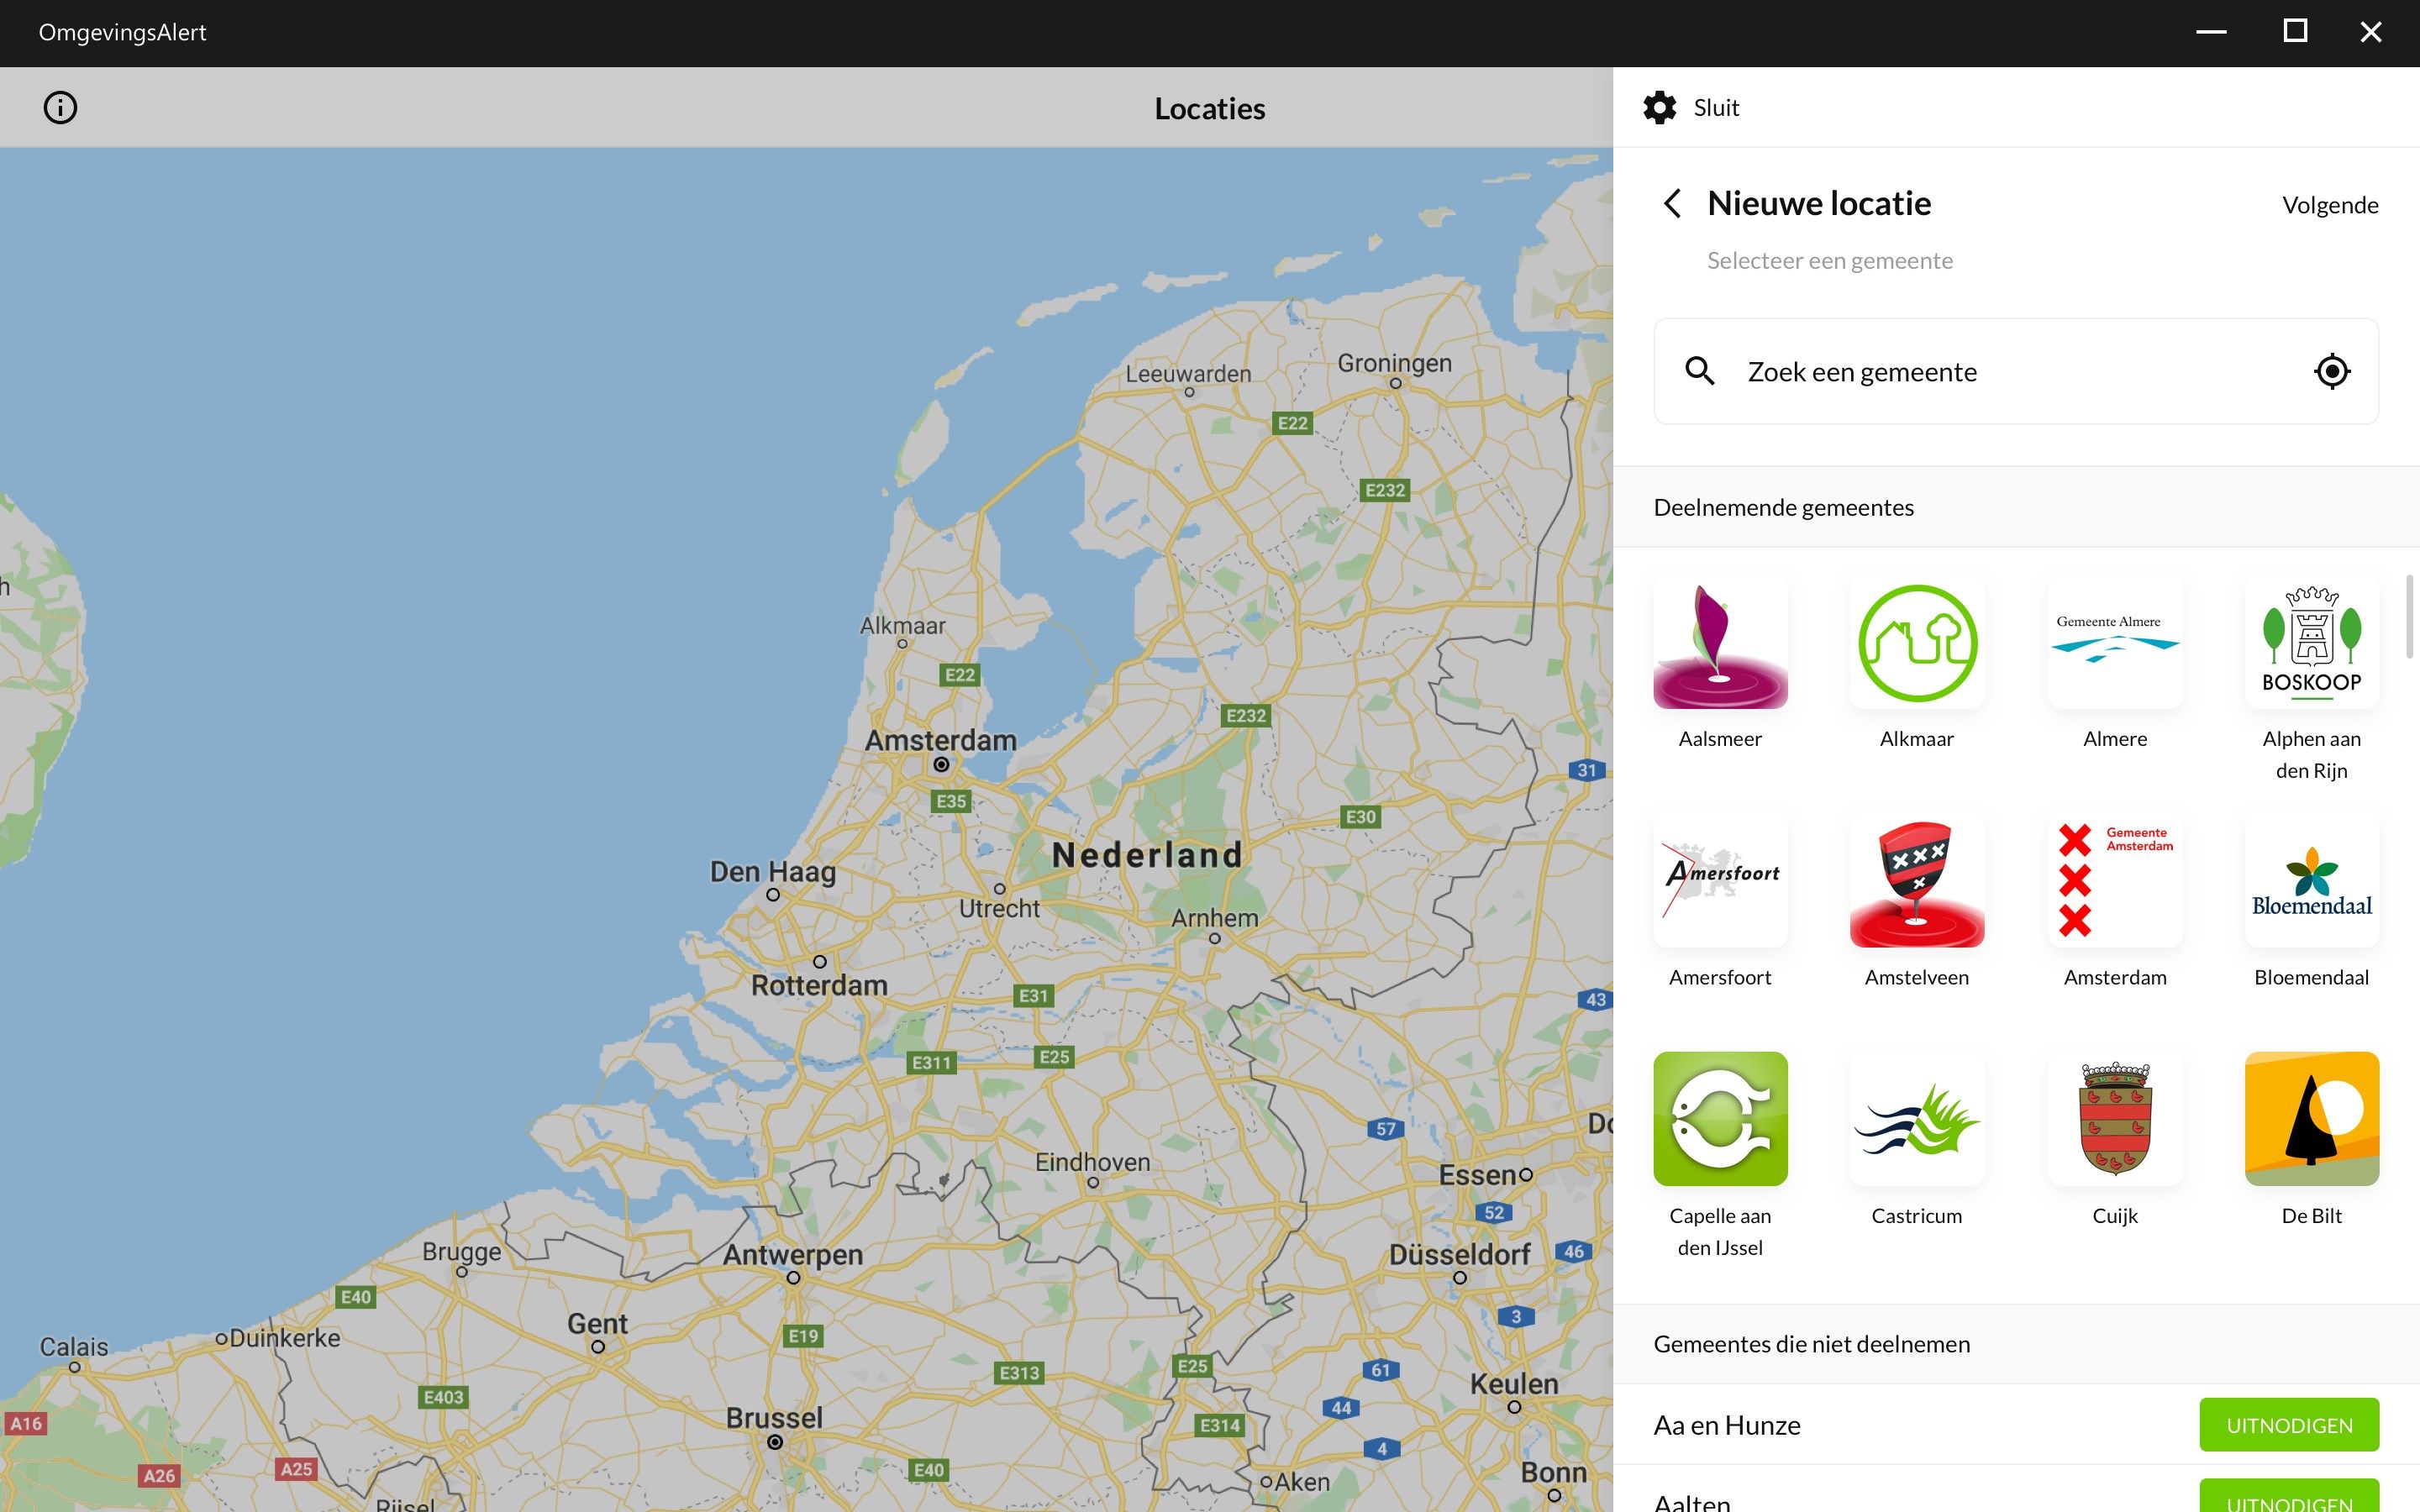 De app is beschikbaar in gemeentes die deelnemen aan OmgevingsAlert. Kijk in de app of op https://www.omgevingsalert.nl/app/aangesloten-gemeenten voor een actueel overzicht.